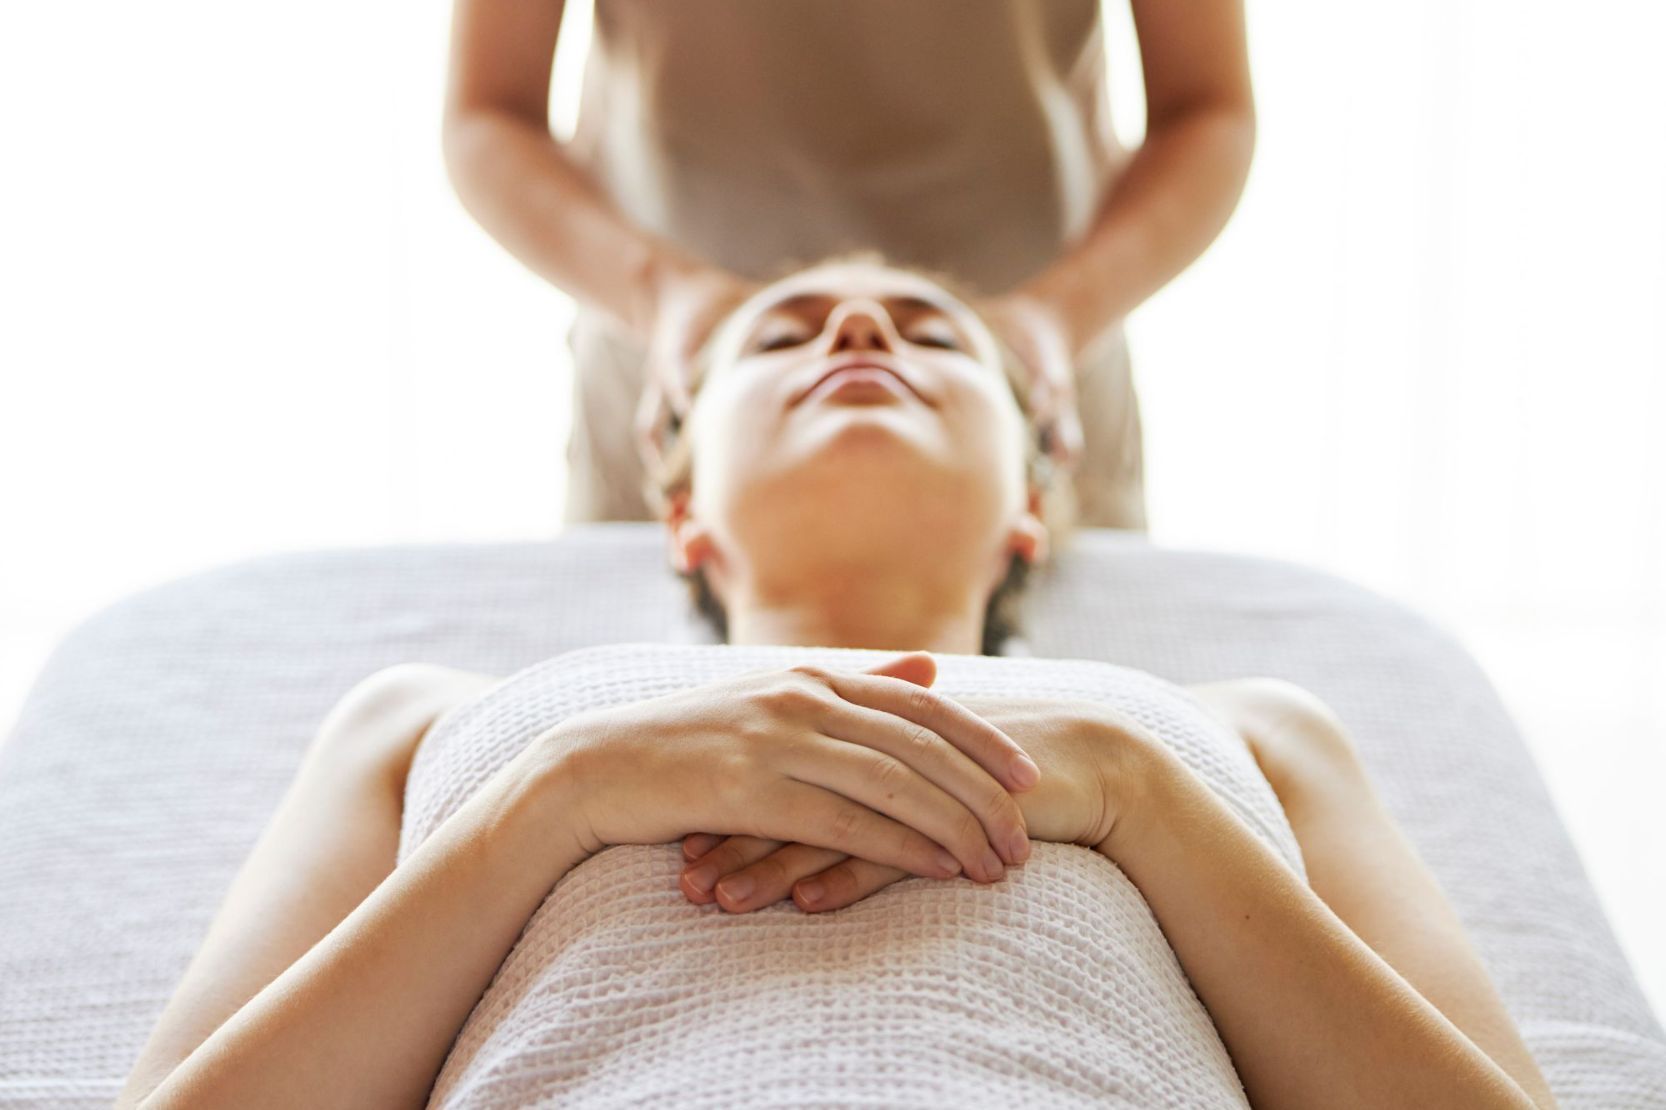 Portfolio usługi Masaż głowy / Head massage